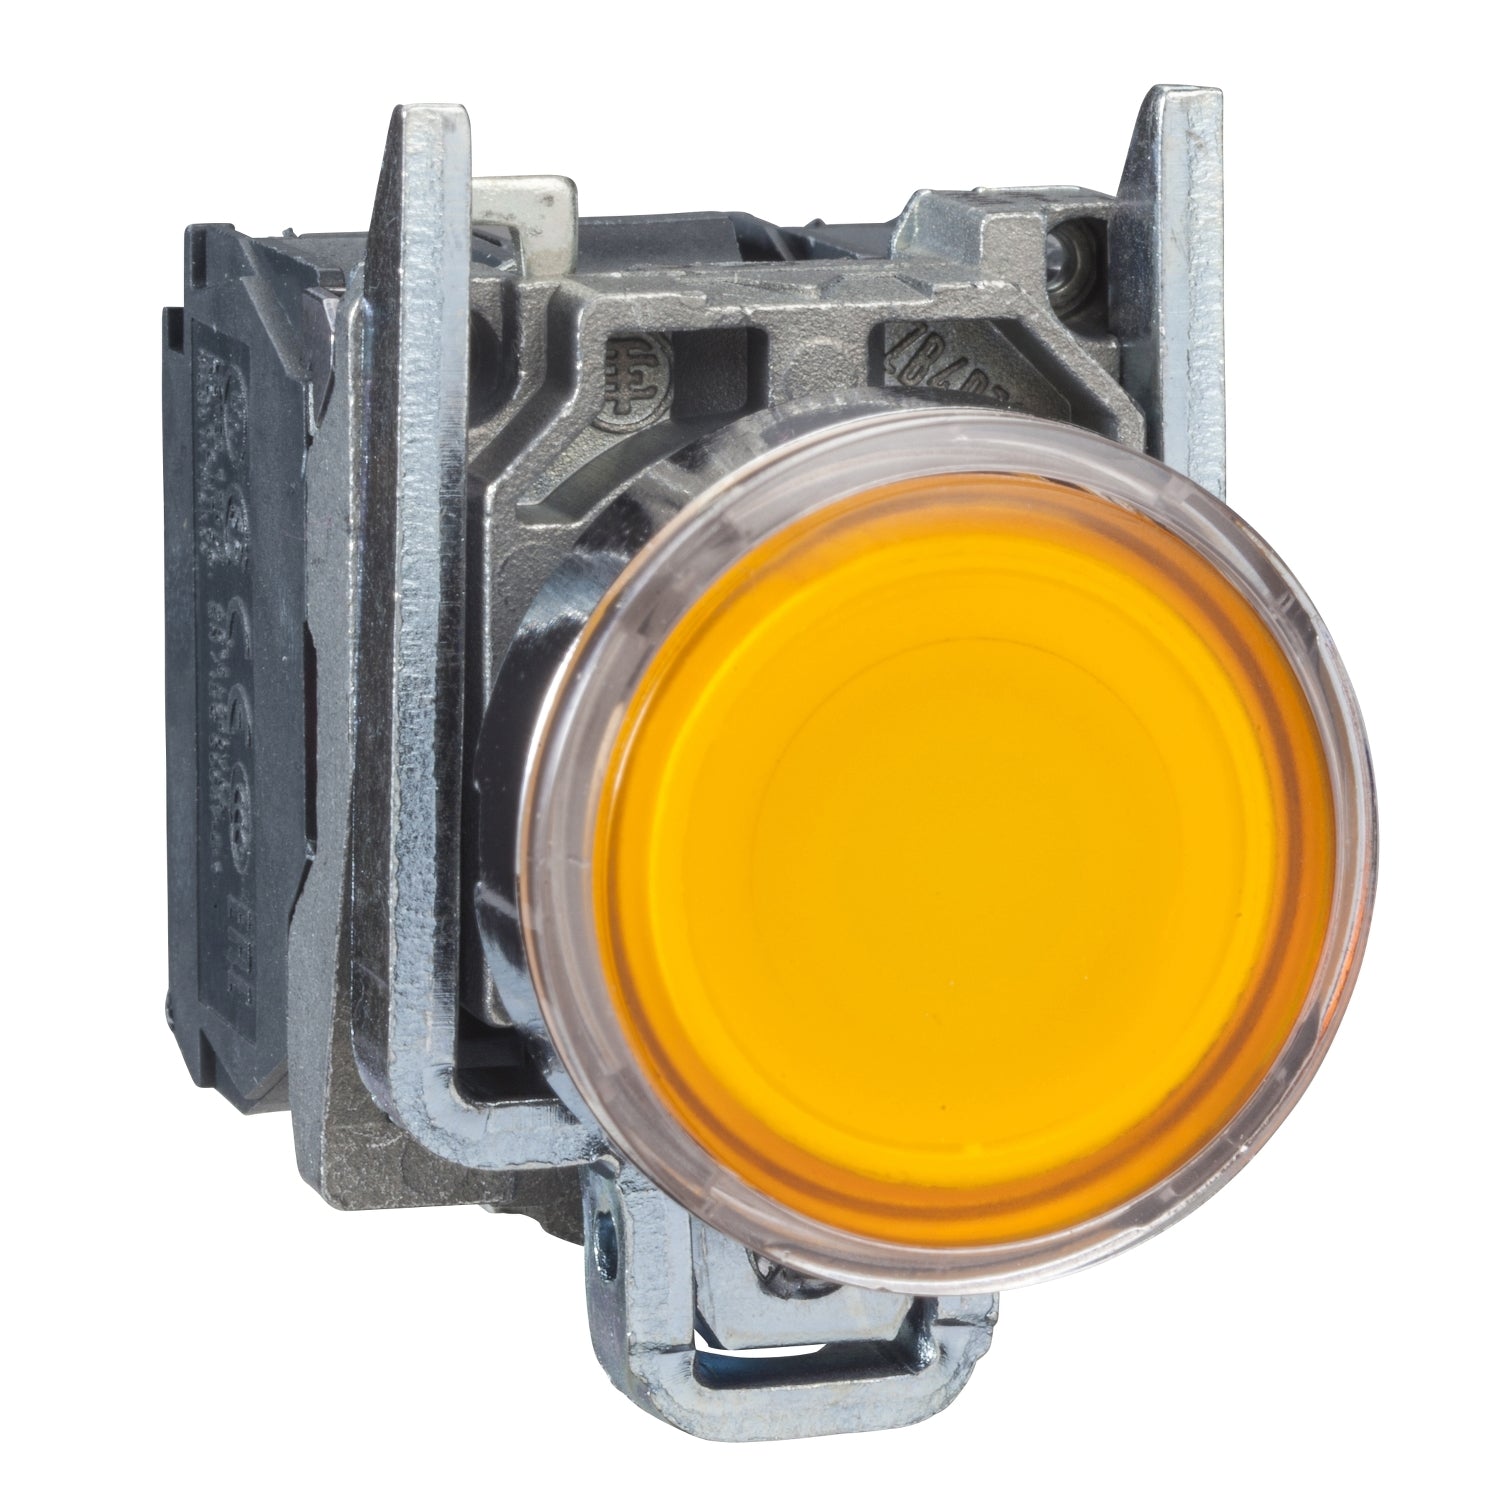 Pulsador Completo Luminoso LED de Marca Schneider Electric de Serie Harmony XB4 (XB4BW35B5) con ø22m de Montaje, Cuerpo Metálico, Tipo de Operatorio Retorno de Resorte, Rasante, Alimentación 24V, Color Amarillo, Contactos 1NA+1NC.